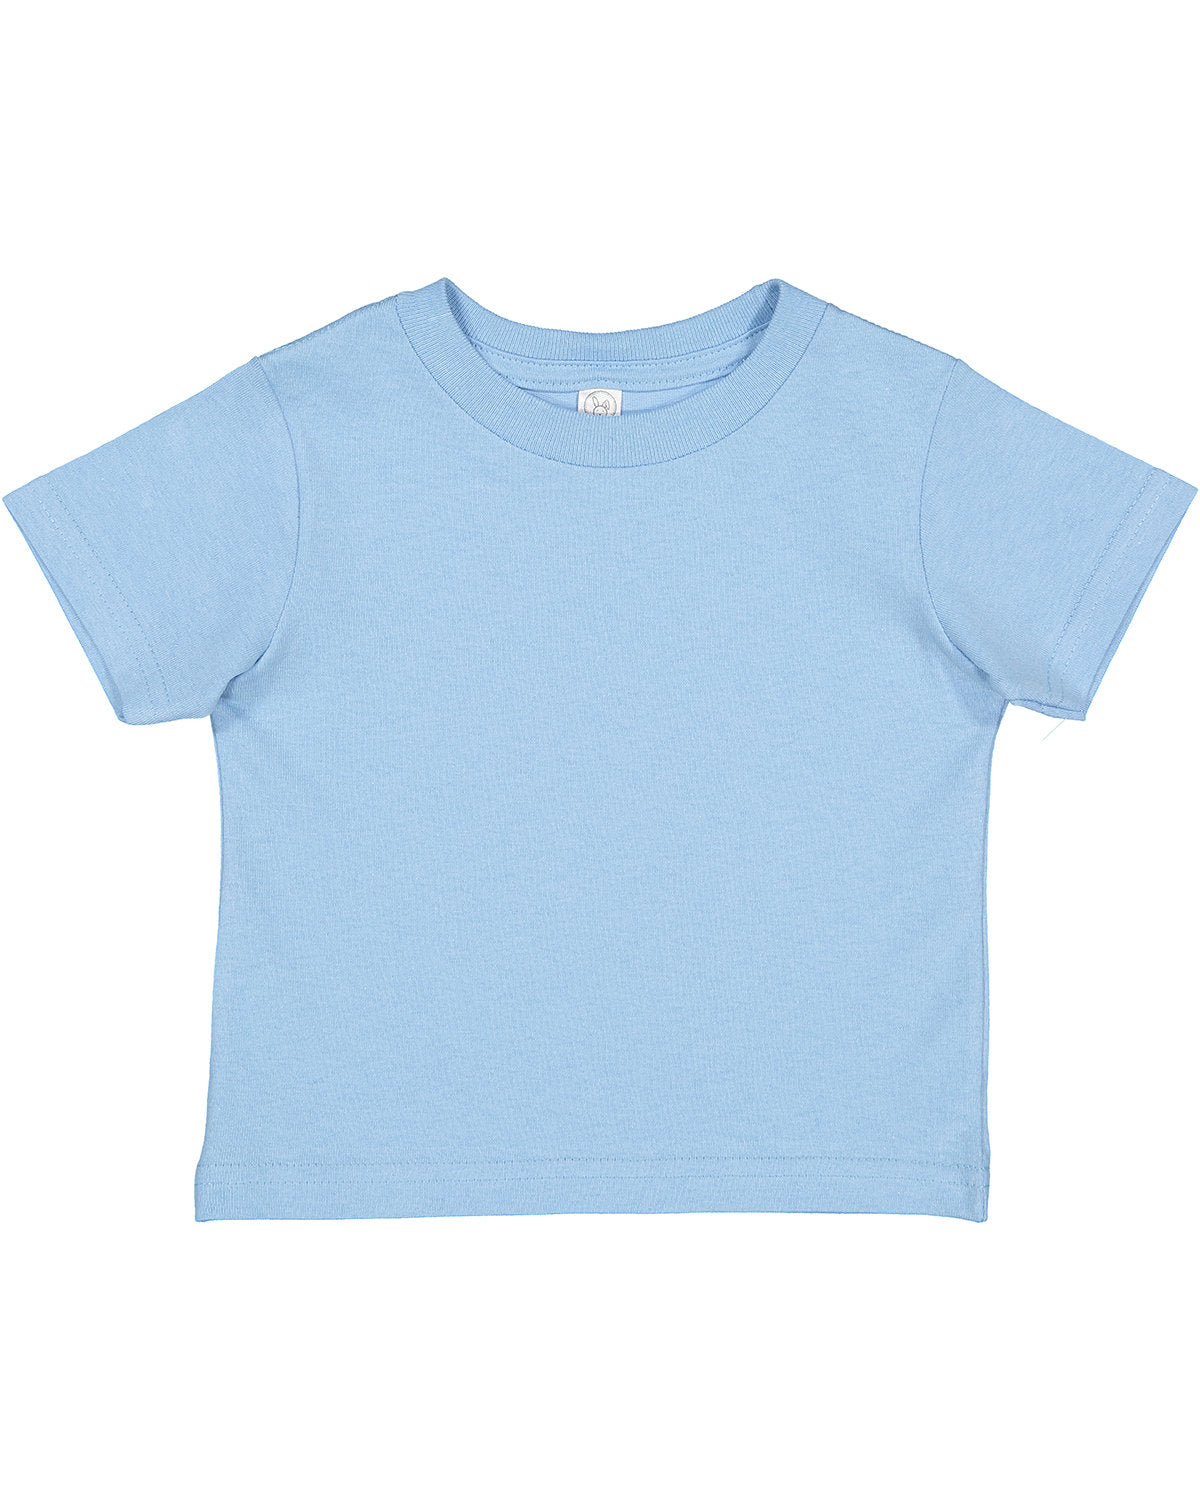 Rabbit Skins Toddler Cotton Jersey T-Shirt 3T / Light Blue